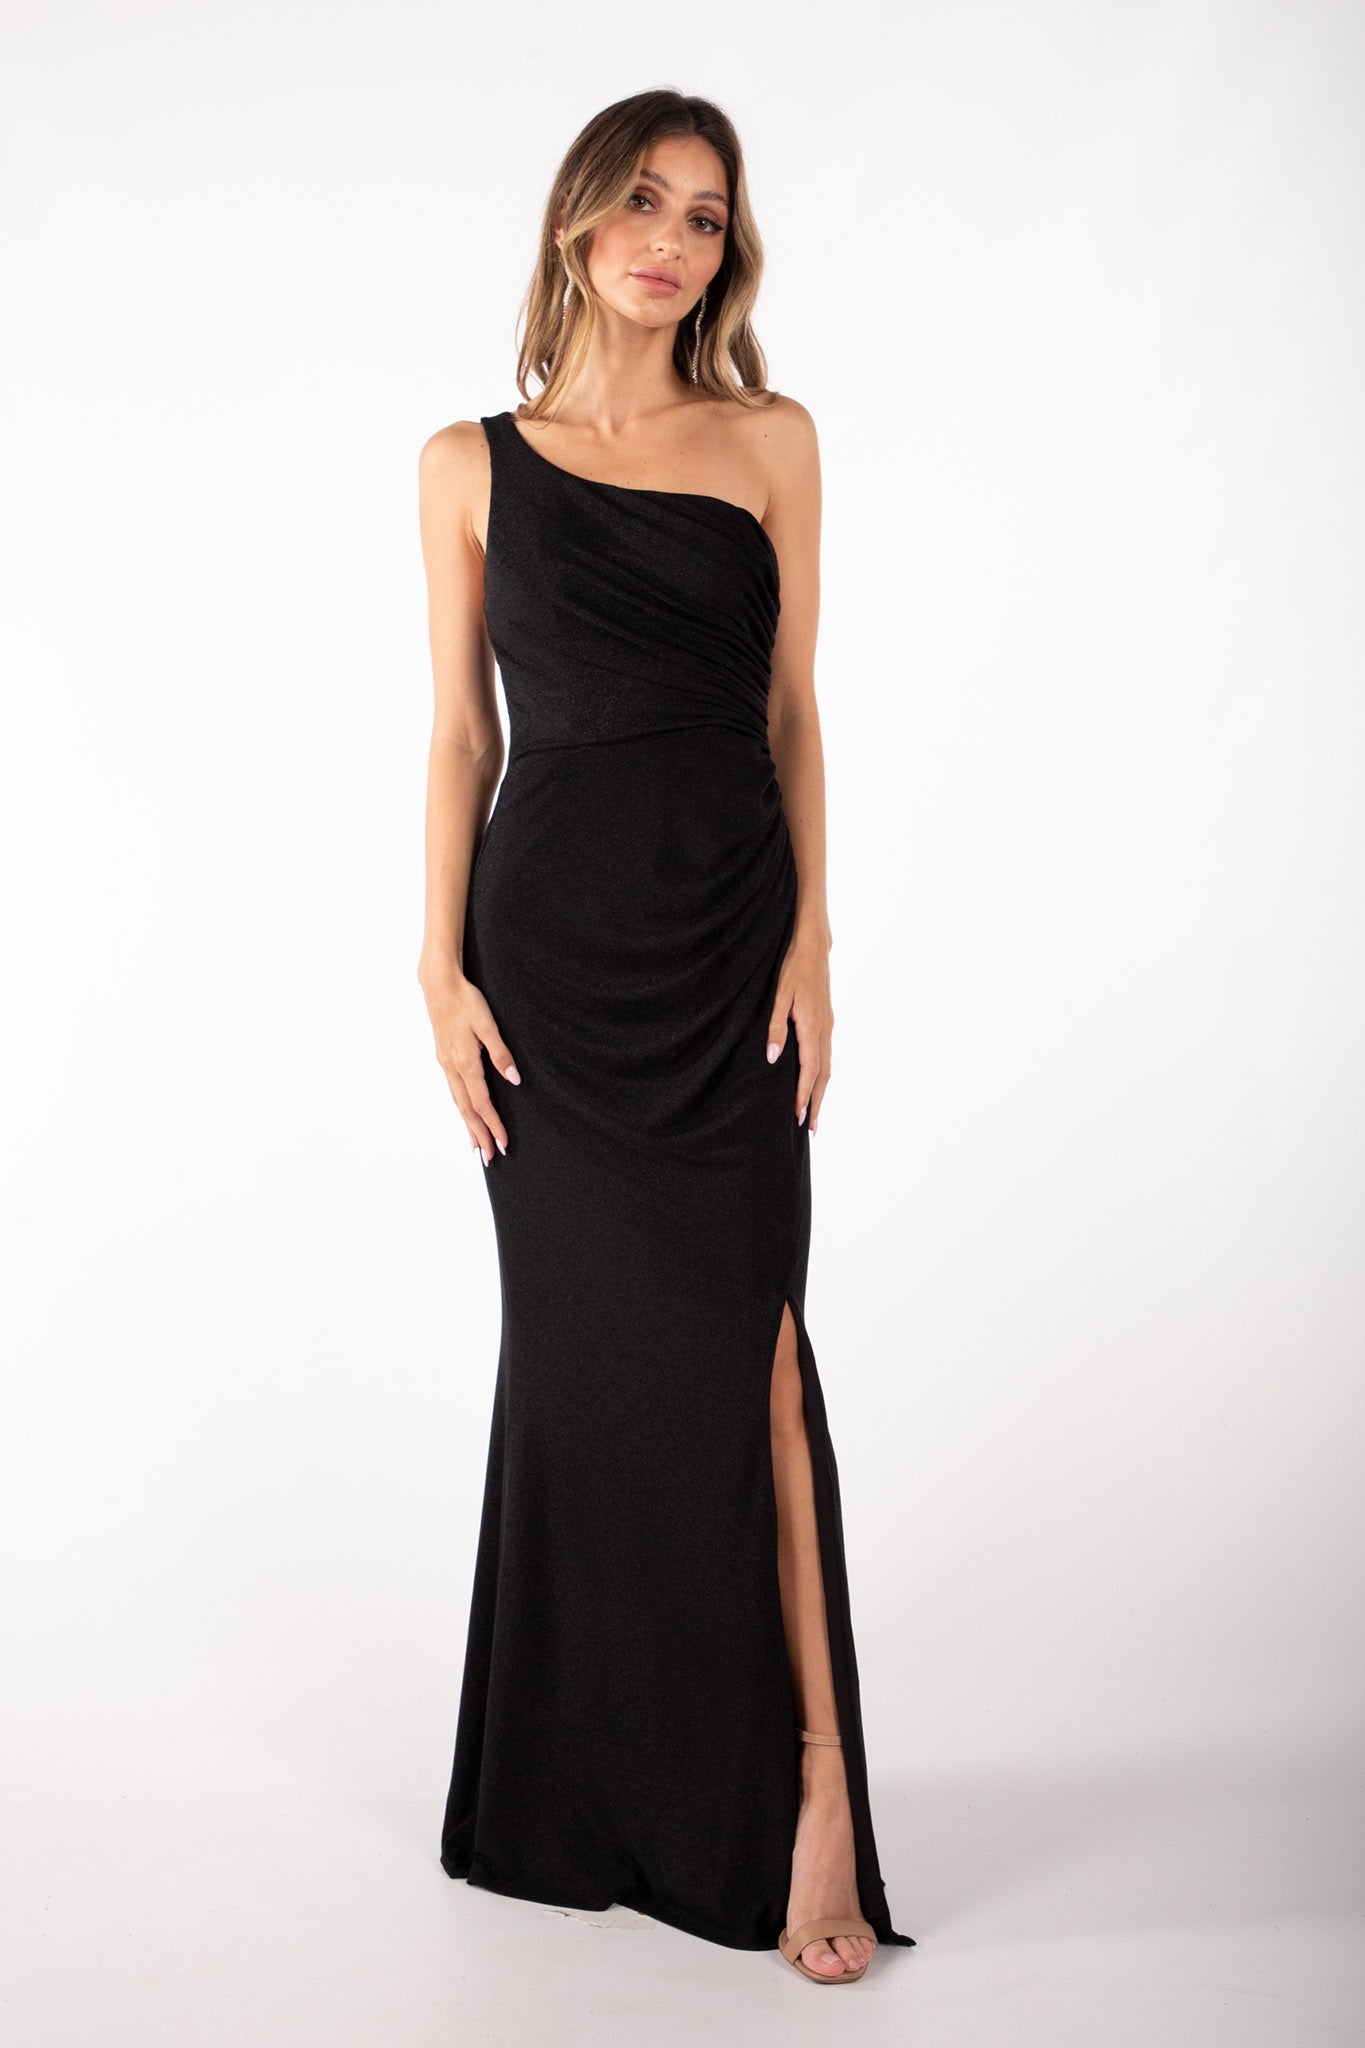 CALI One Shoulder Maxi Dress - Shimmer Black | Noodz Boutique